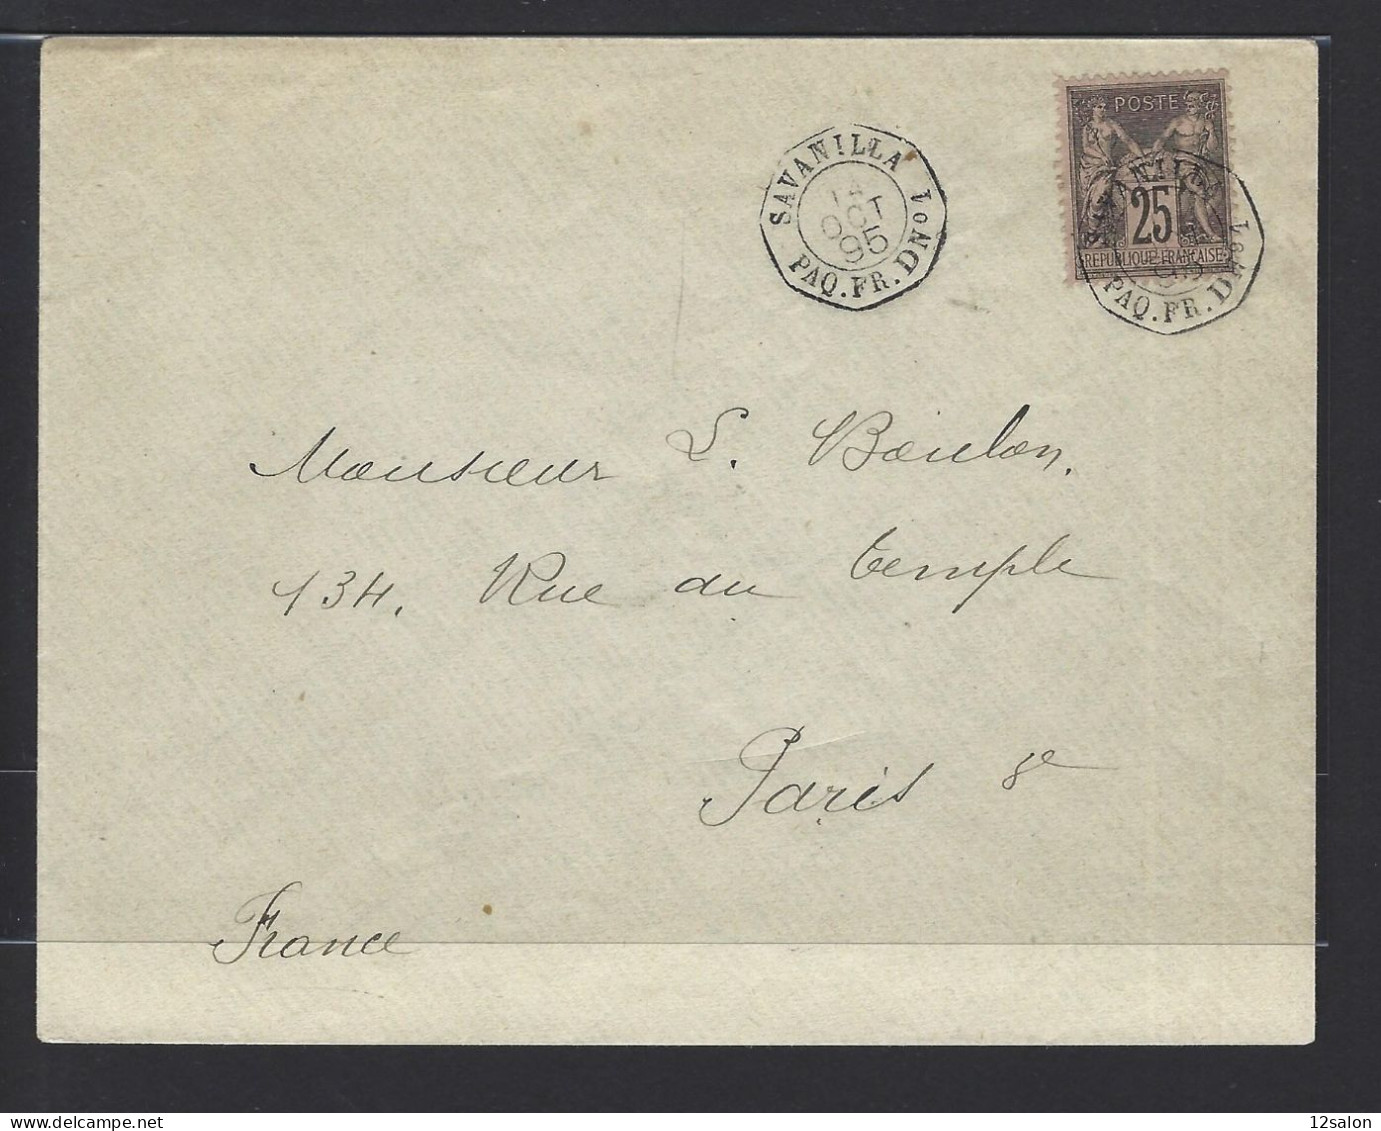 MARITIME SAGE N°97 OBL CAD Octogone Sur La Pointe "Savanilla Paq FR D N°1" (1895) Répété à Côté (Salles N°1505 - Ind 20) - Maritime Post